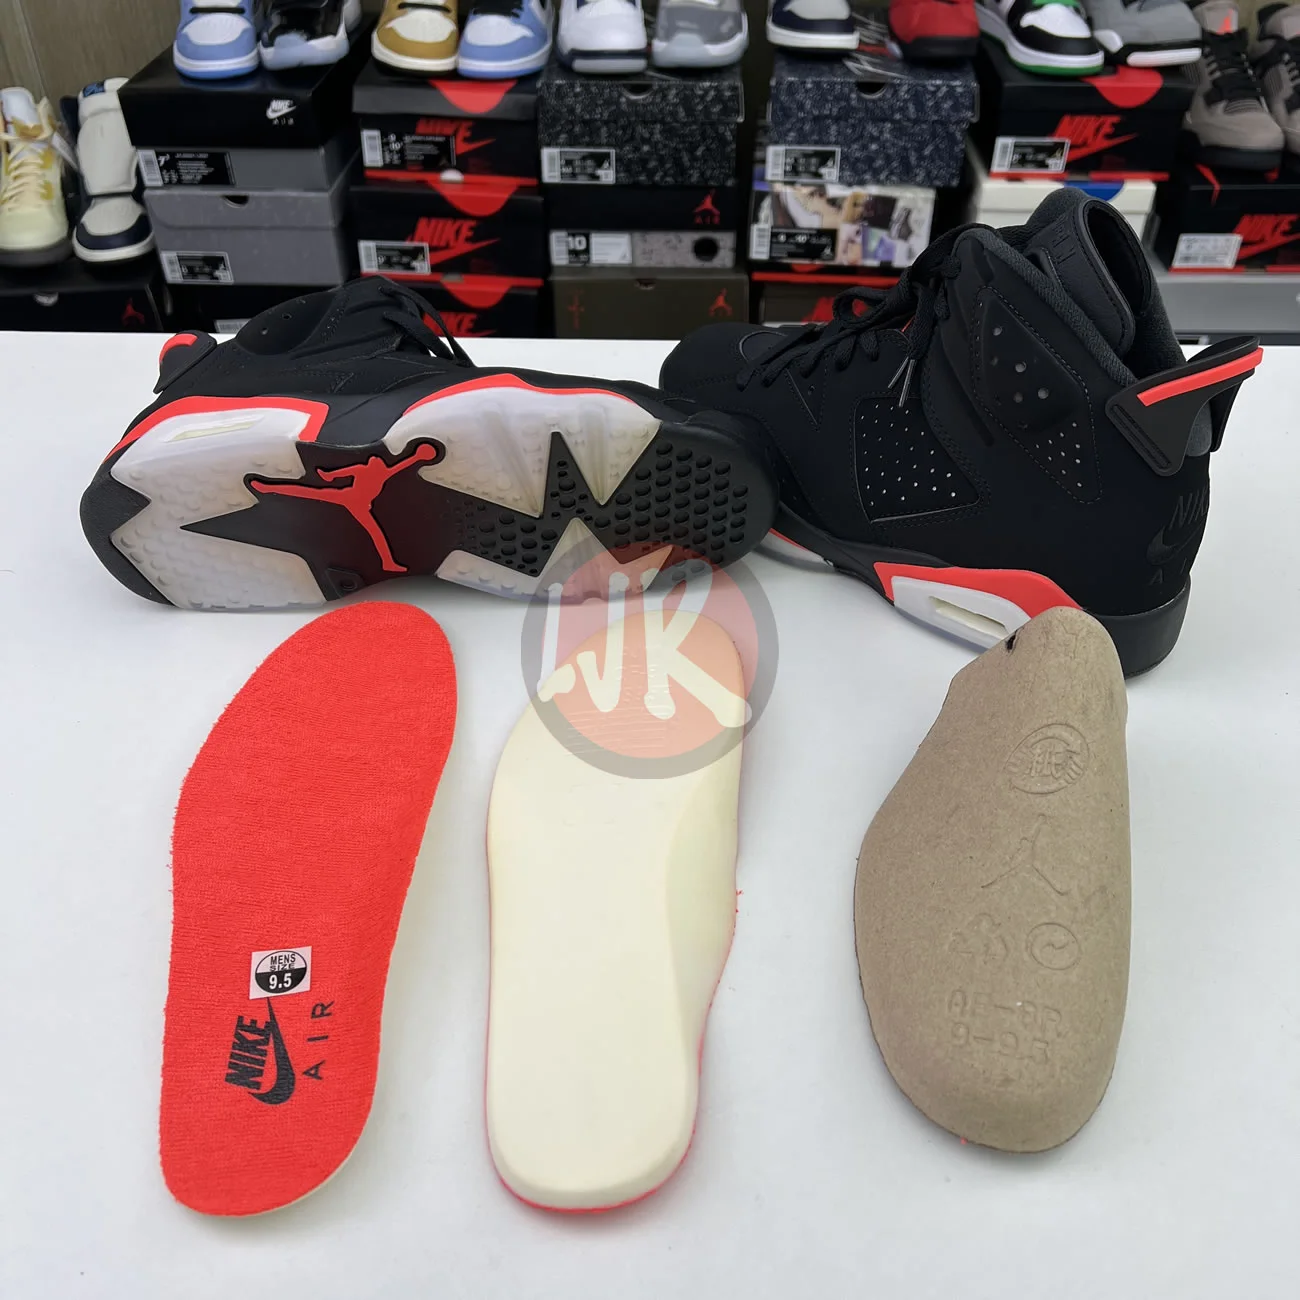 Air Jordan 6 Retro Black Infrared 2019 384664 060 Ljr Sneakers (11) - bc-ljr.net